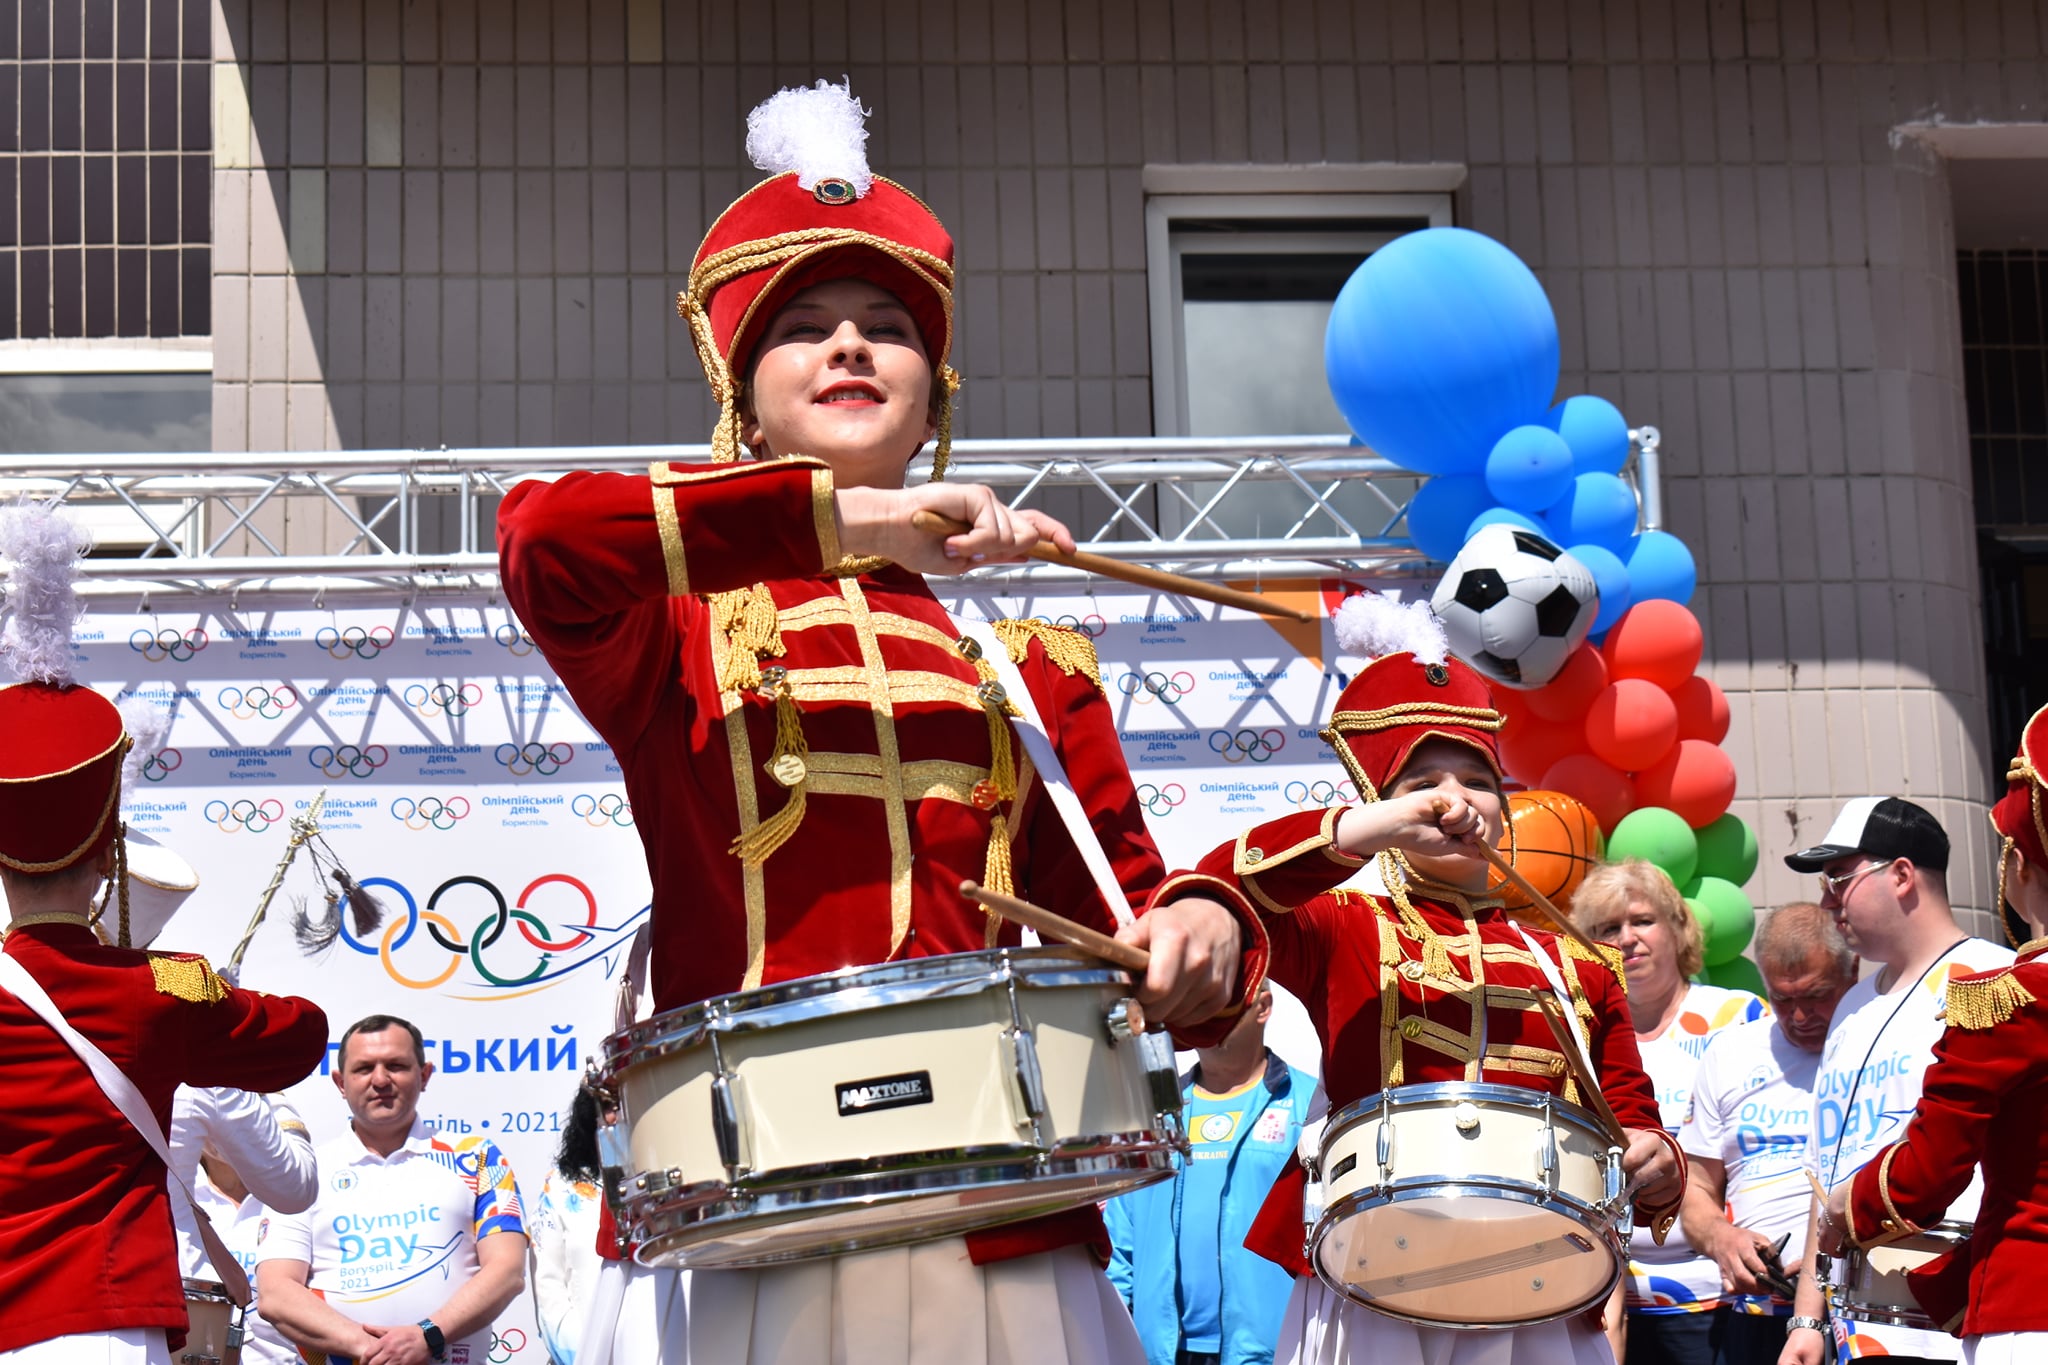 «Олімпійський день-2021», Бориспіль. фото